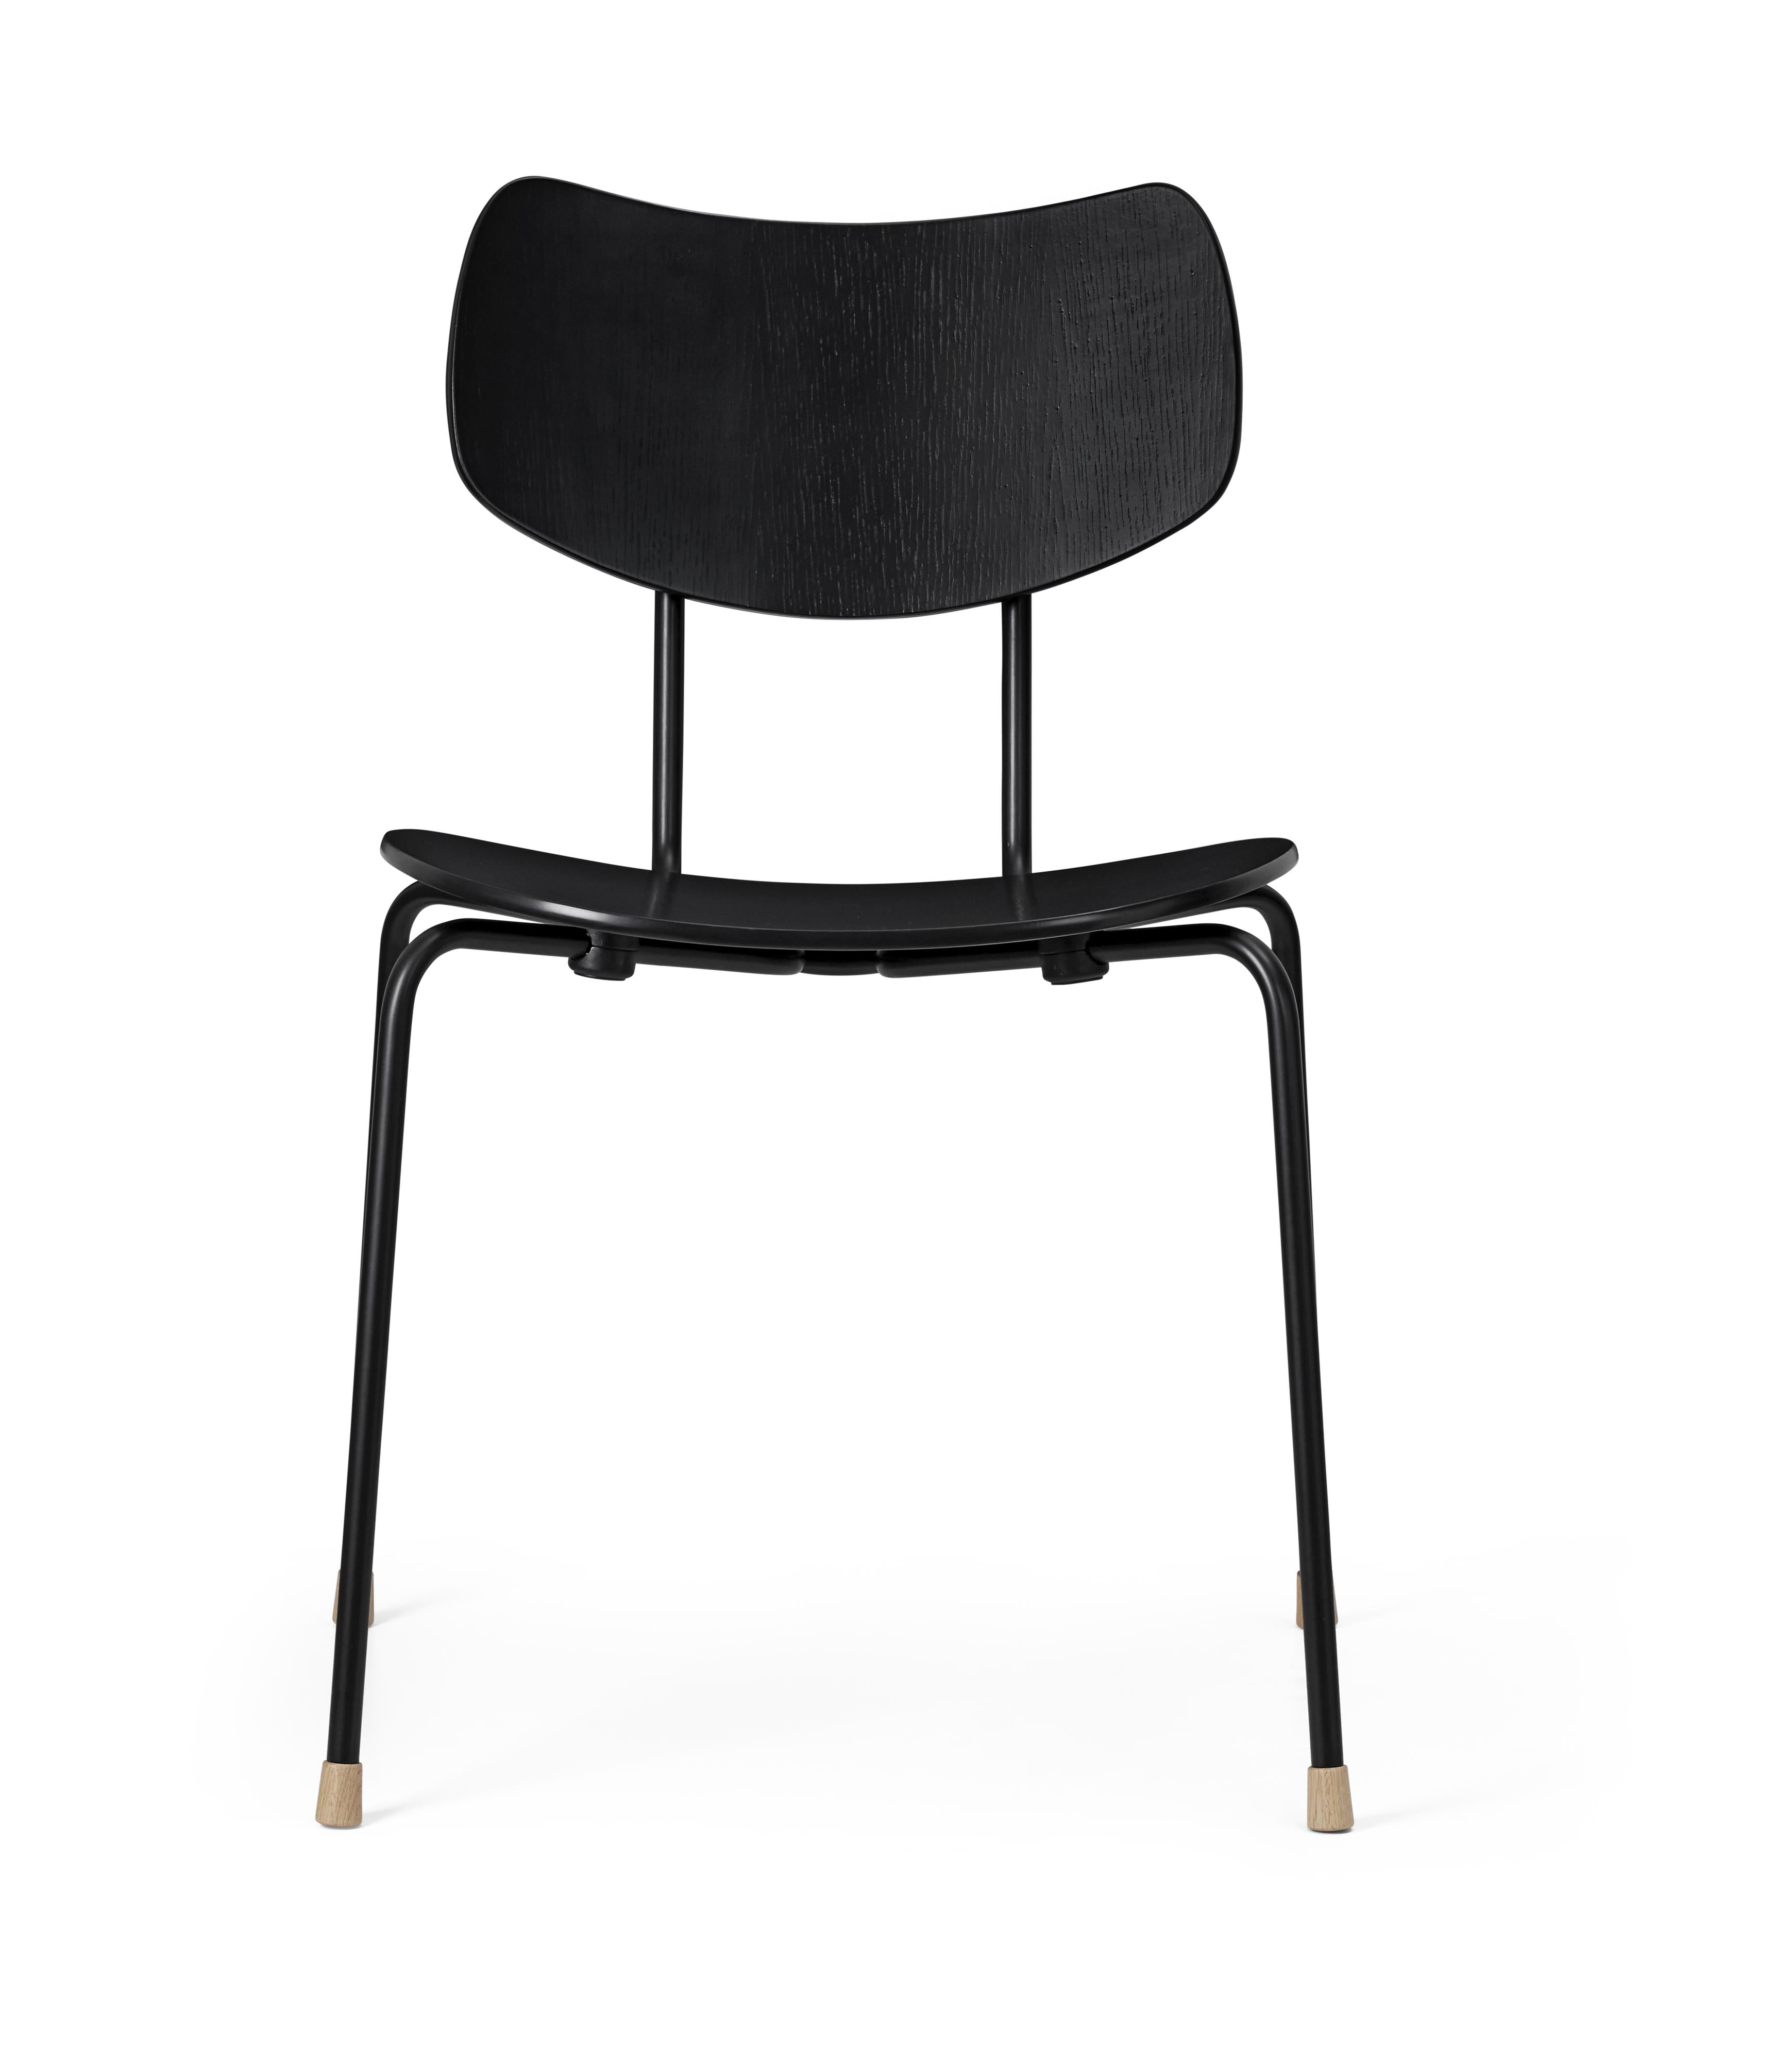 Carl Hansen Vla26t Vega Chair, Eiche Black Lacked